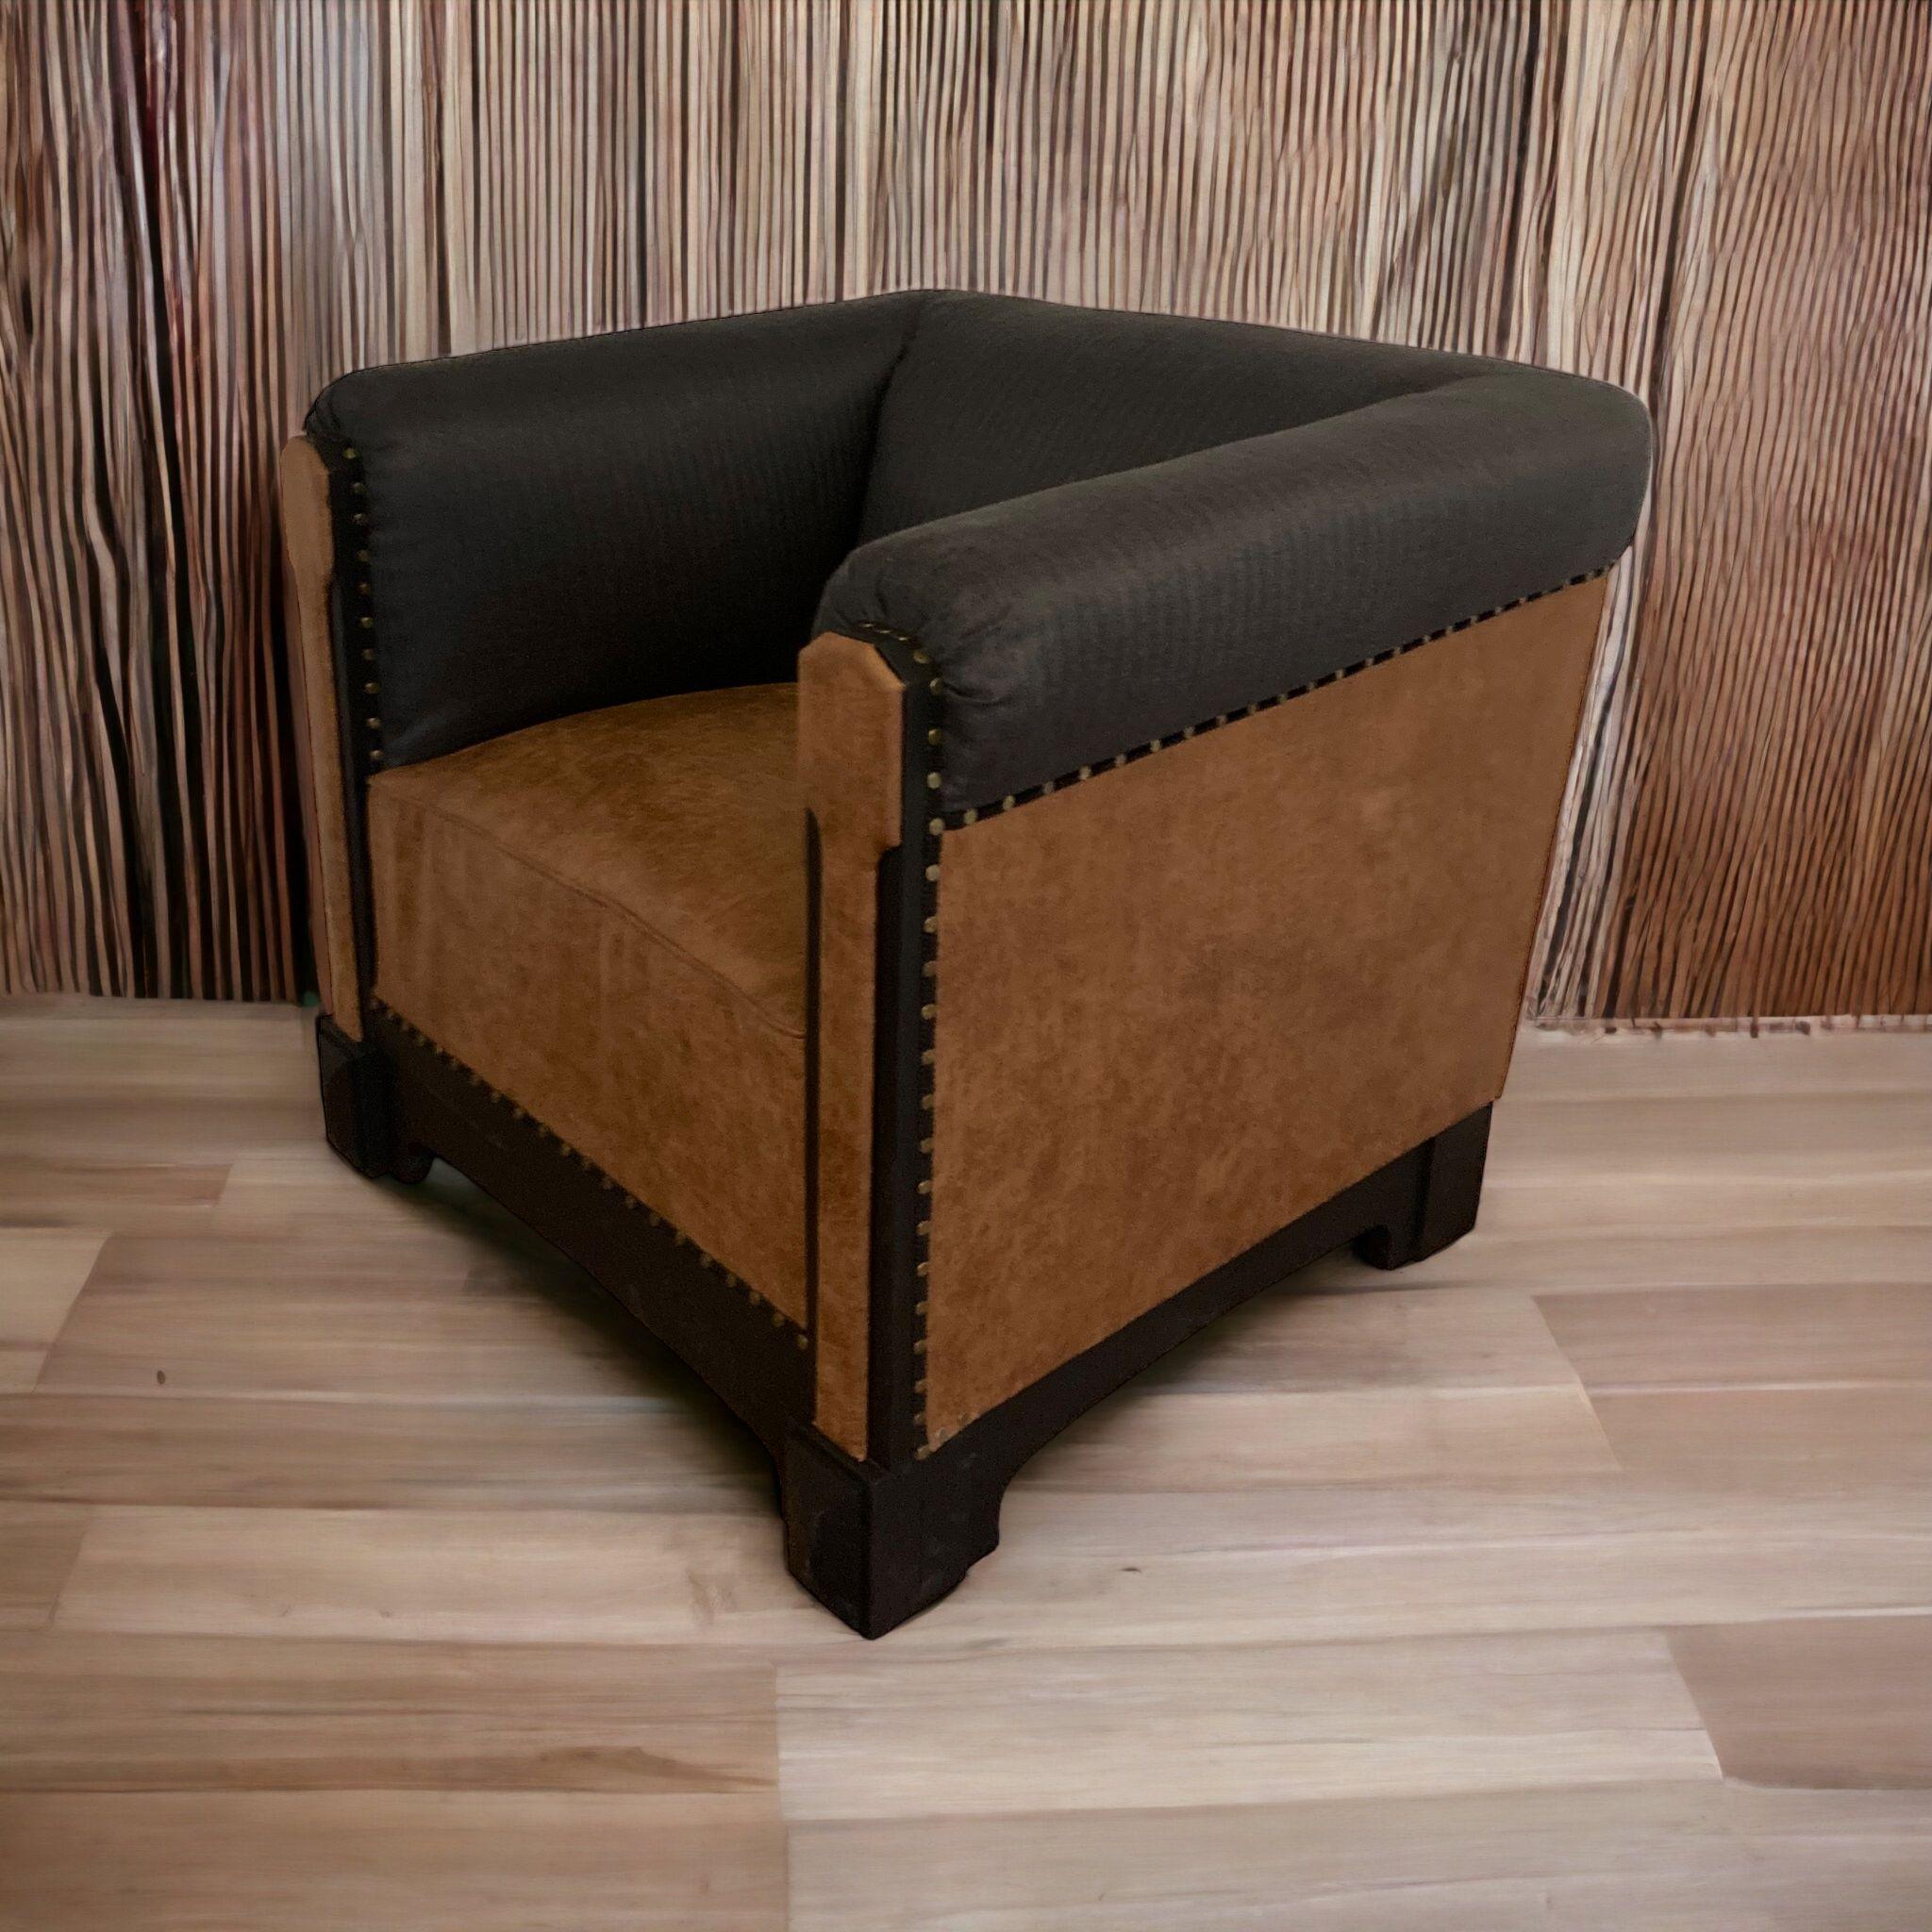 Eine schöne seltene Art Deco 19. Jahrhundert Französisch Club Chair. Dieser Stuhl, von dem man annimmt, dass er aus Paris stammt, wurde professionell restauriert und mit einem Sitz aus Kunstleder und Seiten mit einem Fischgräten-Tweed-Stoff